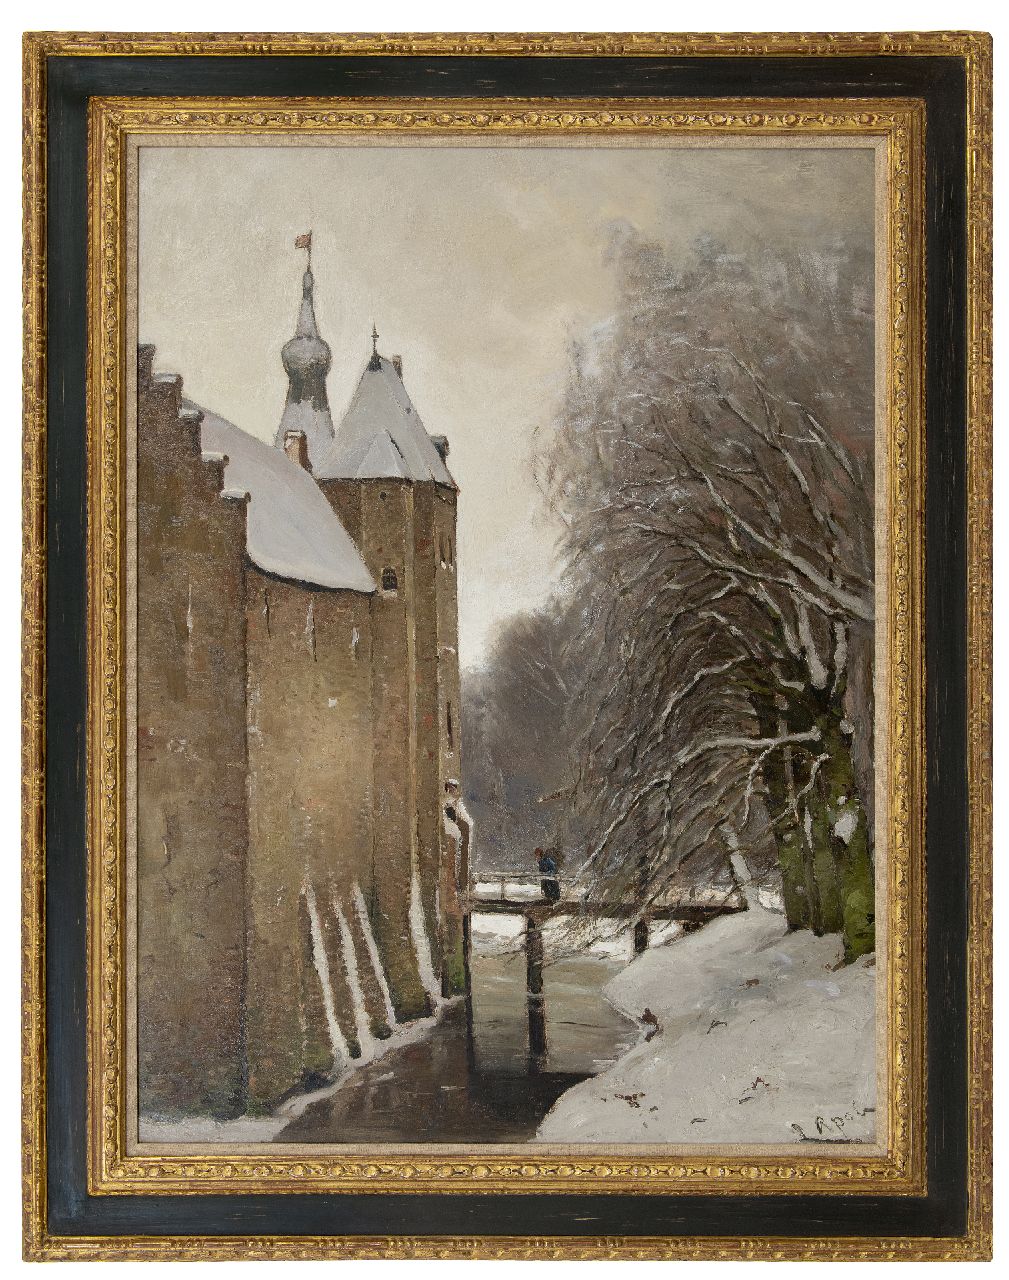 Apol L.F.H.  | Lodewijk Franciscus Hendrik 'Louis' Apol | Schilderijen te koop aangeboden | Kasteel Doorwerth in de sneeuw, olieverf op doek 108,2 x 81,2 cm, gesigneerd rechtsonder